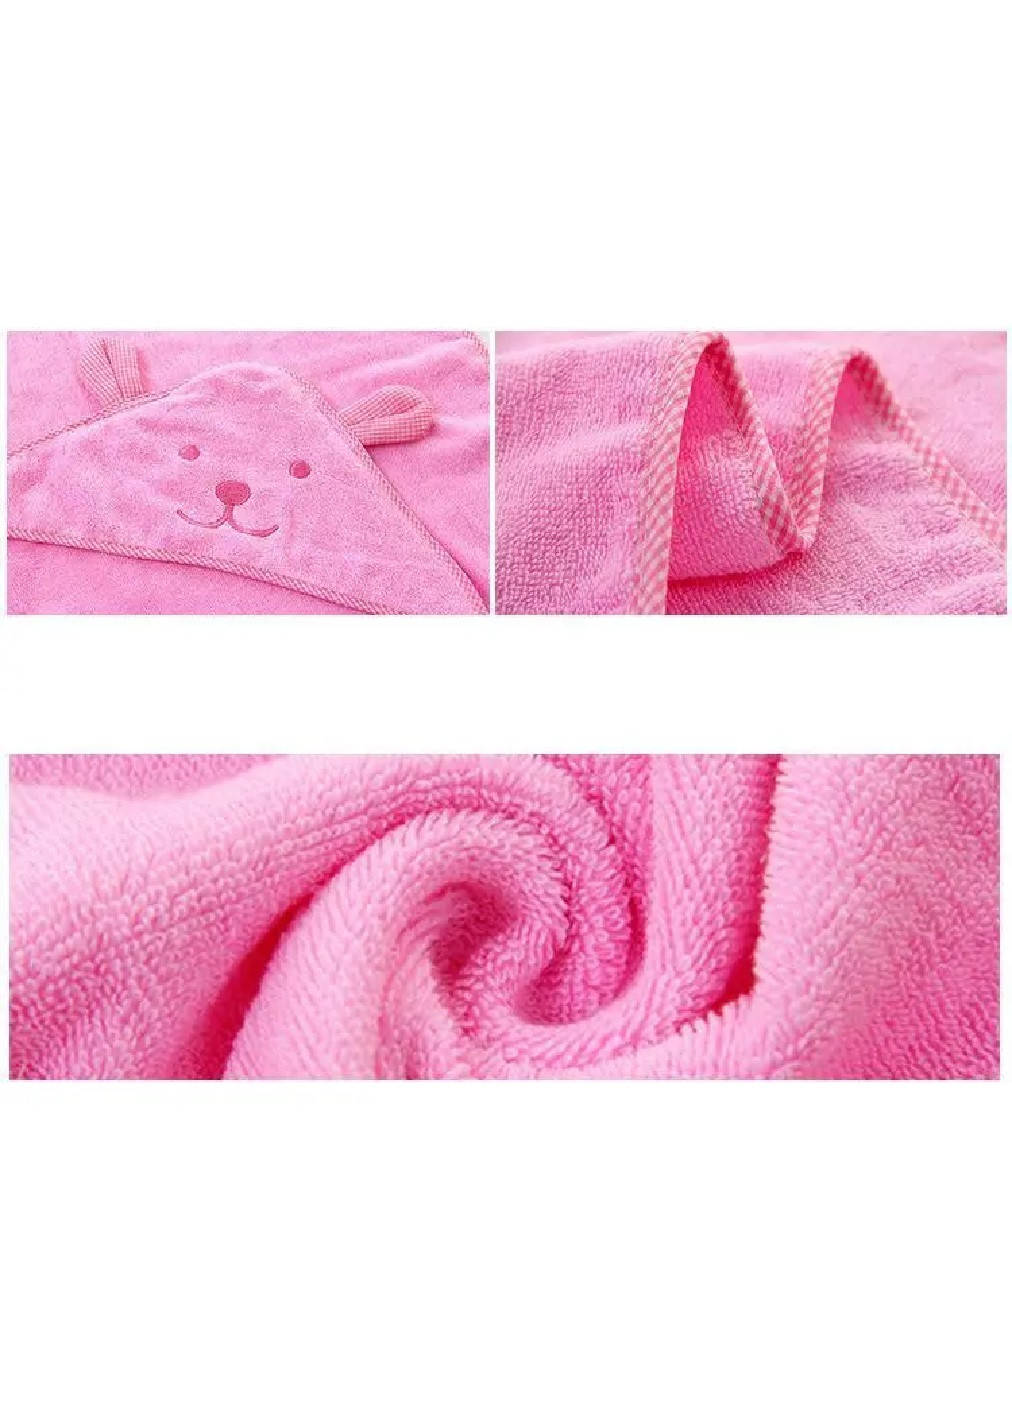 Unbranded полотенце с капюшоном детское банное плед уголок конверт для купания 90х90 см (473203-prob) розовое однотонный розовый производство -